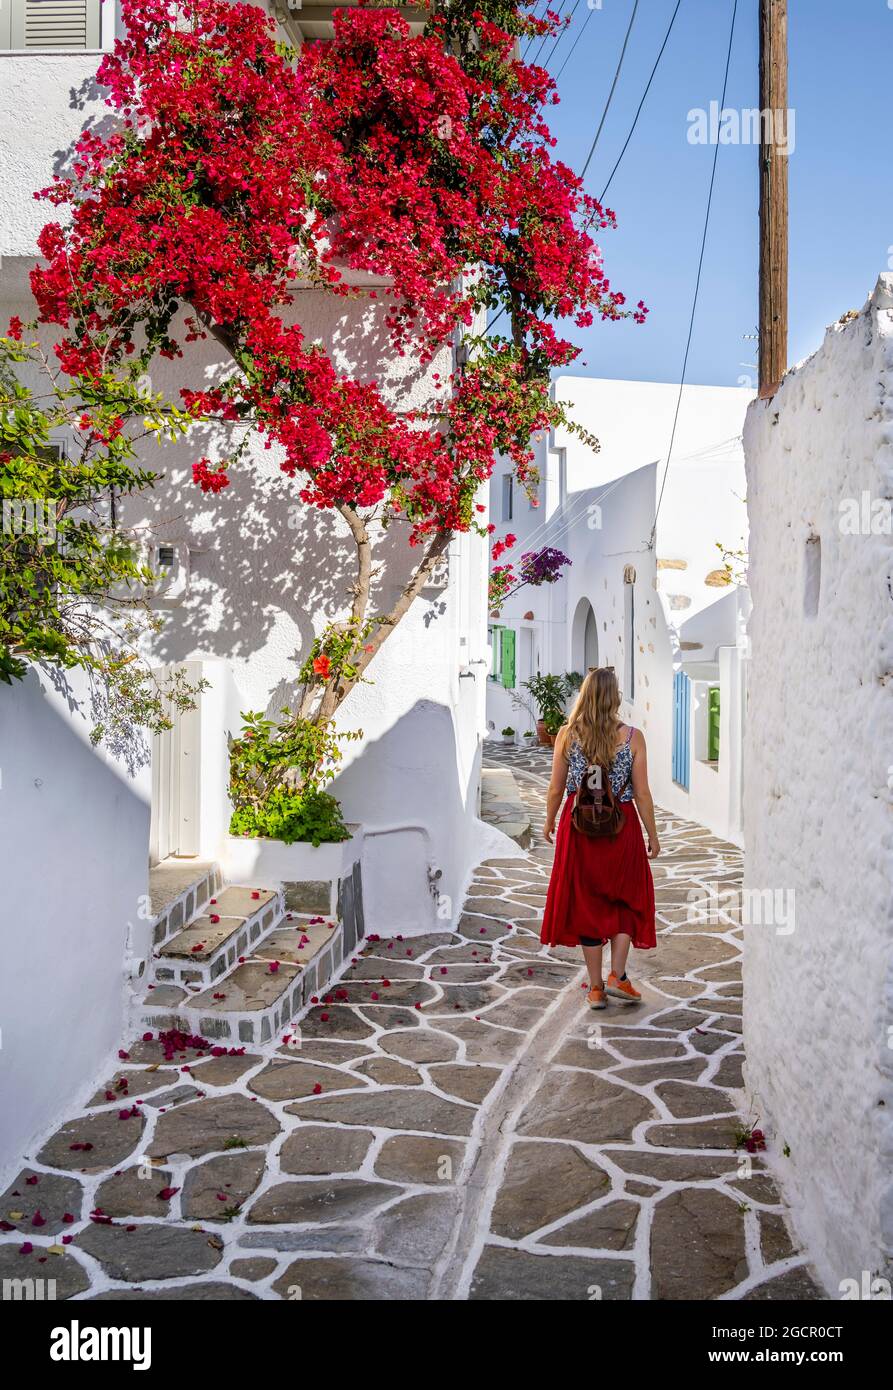 Maisons blanches et bleues avec bougainvilliers fleuris (bougainvilliers), Jeune femme avec robe rouge dans la vieille ville de Lefkes, Paros, Cyclades, Grèce Banque D'Images